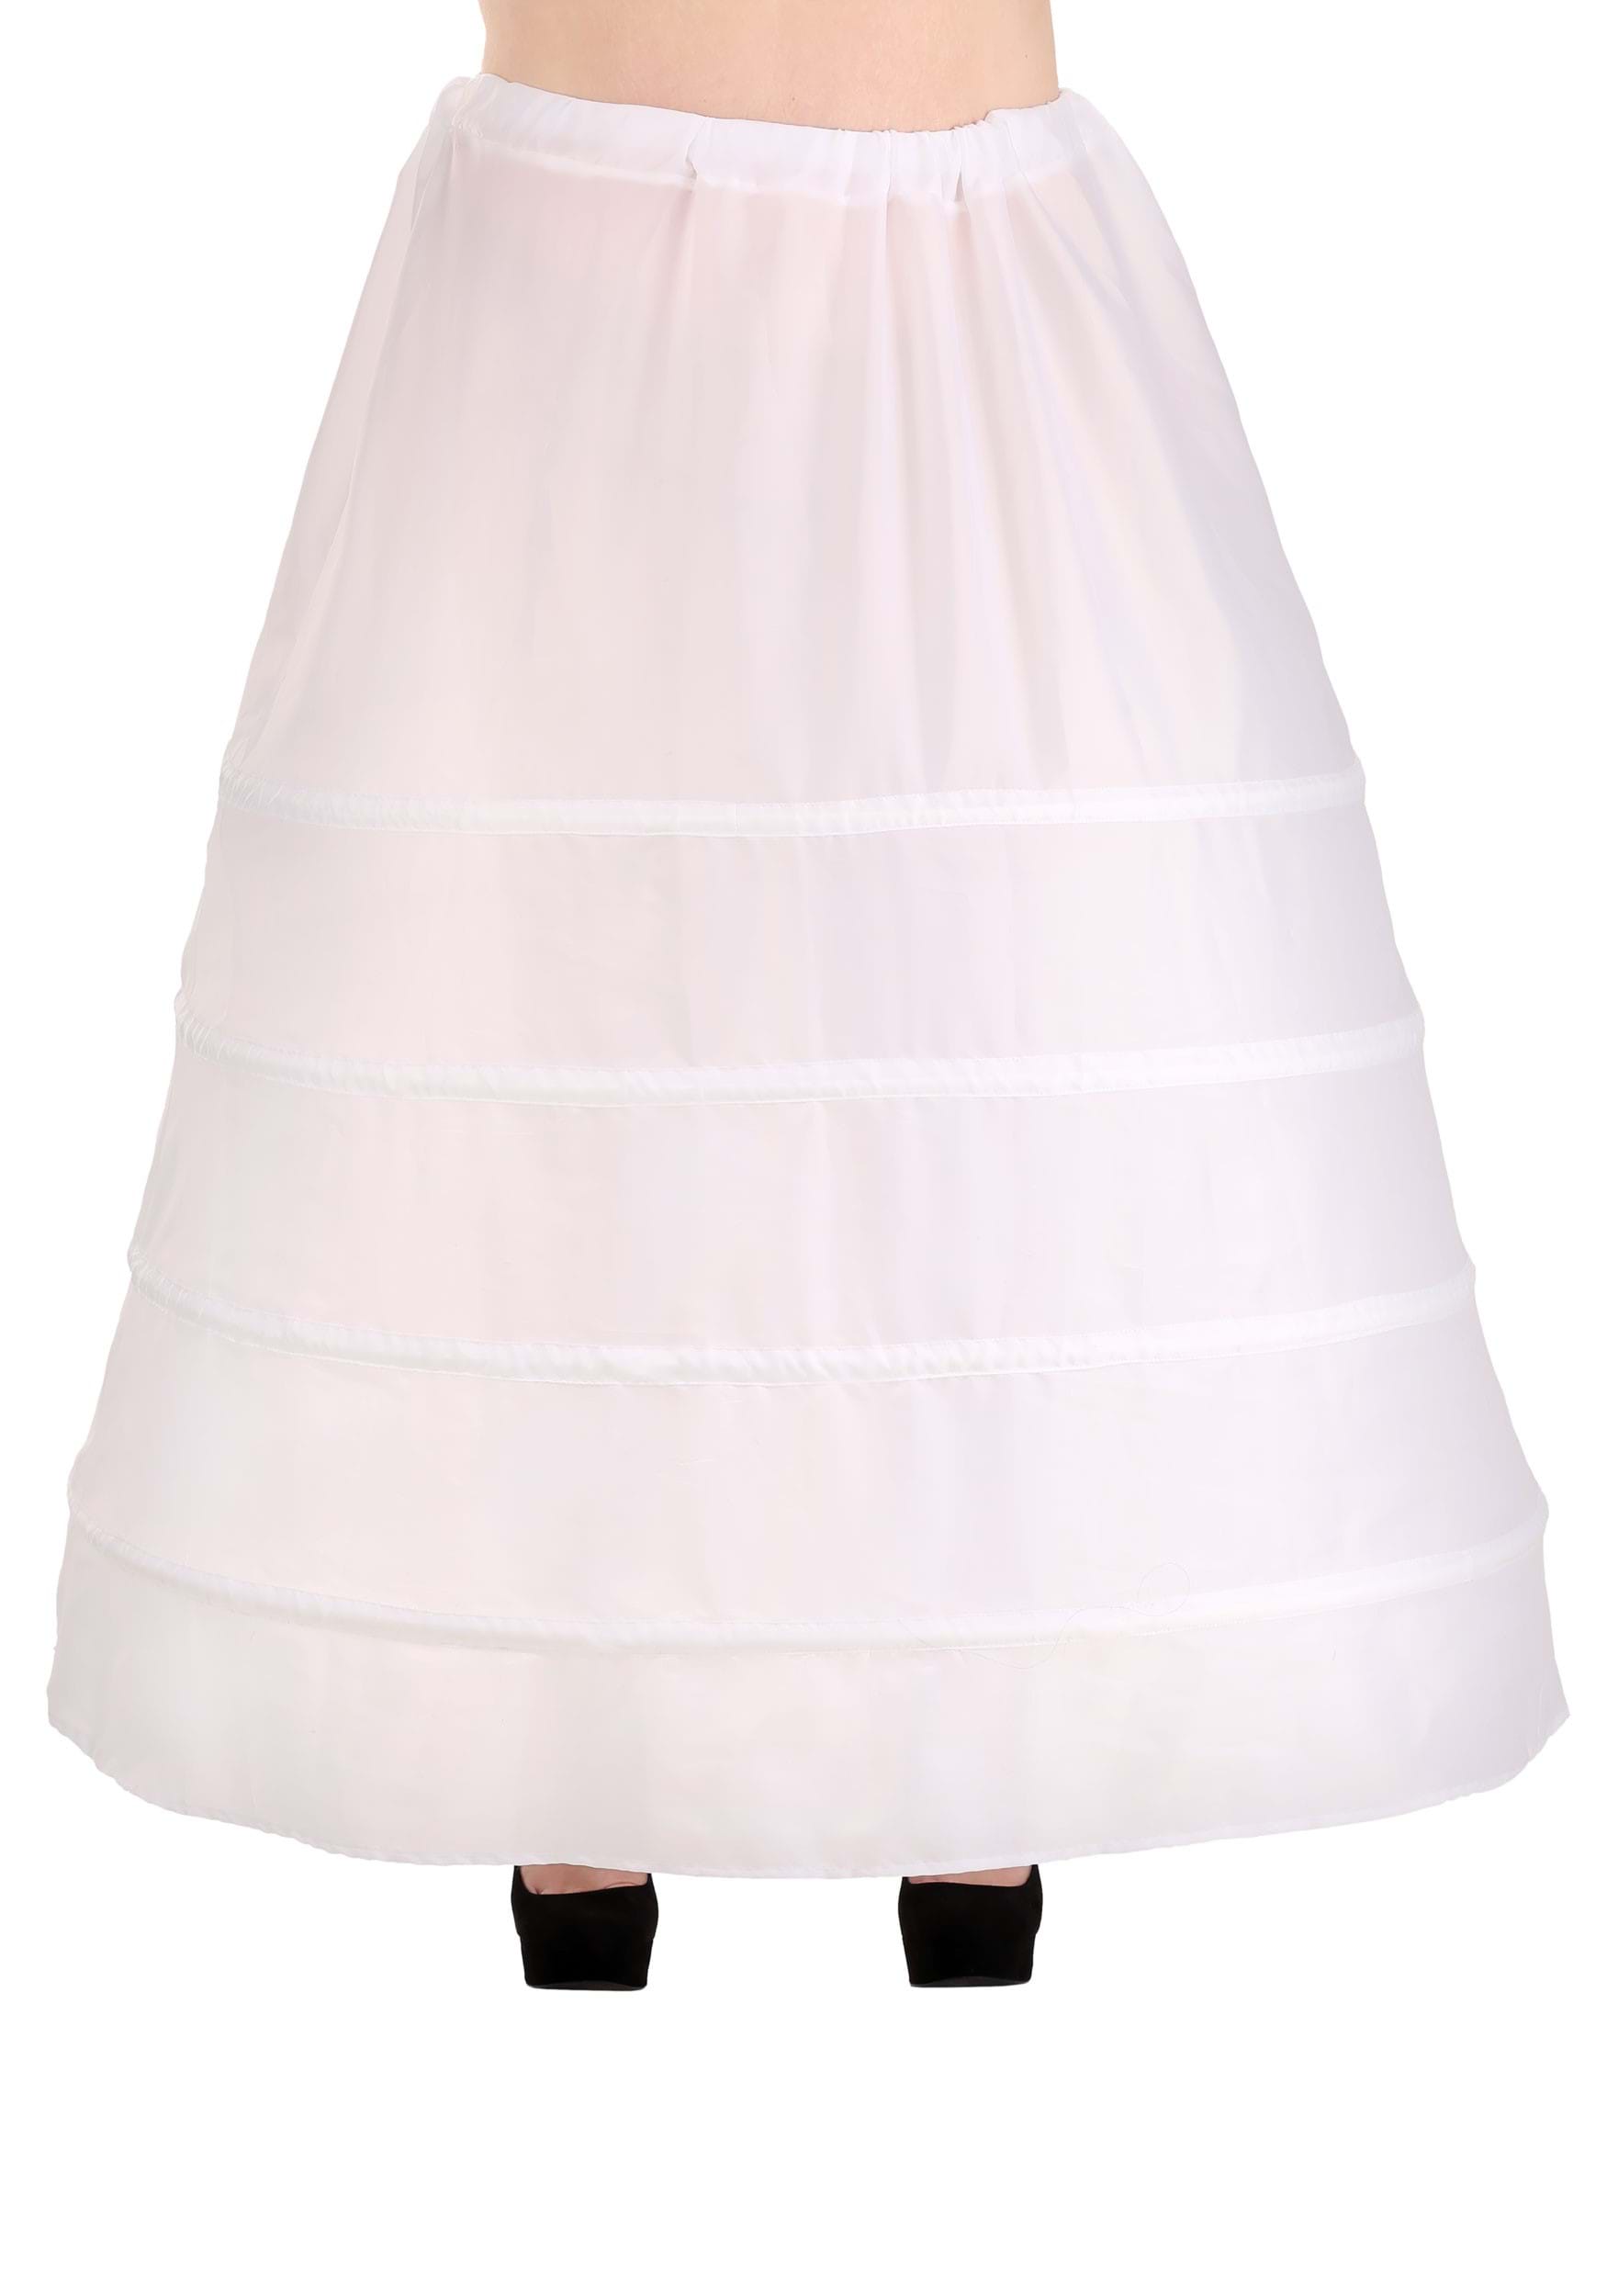 Plus Size White Hoop Skirt